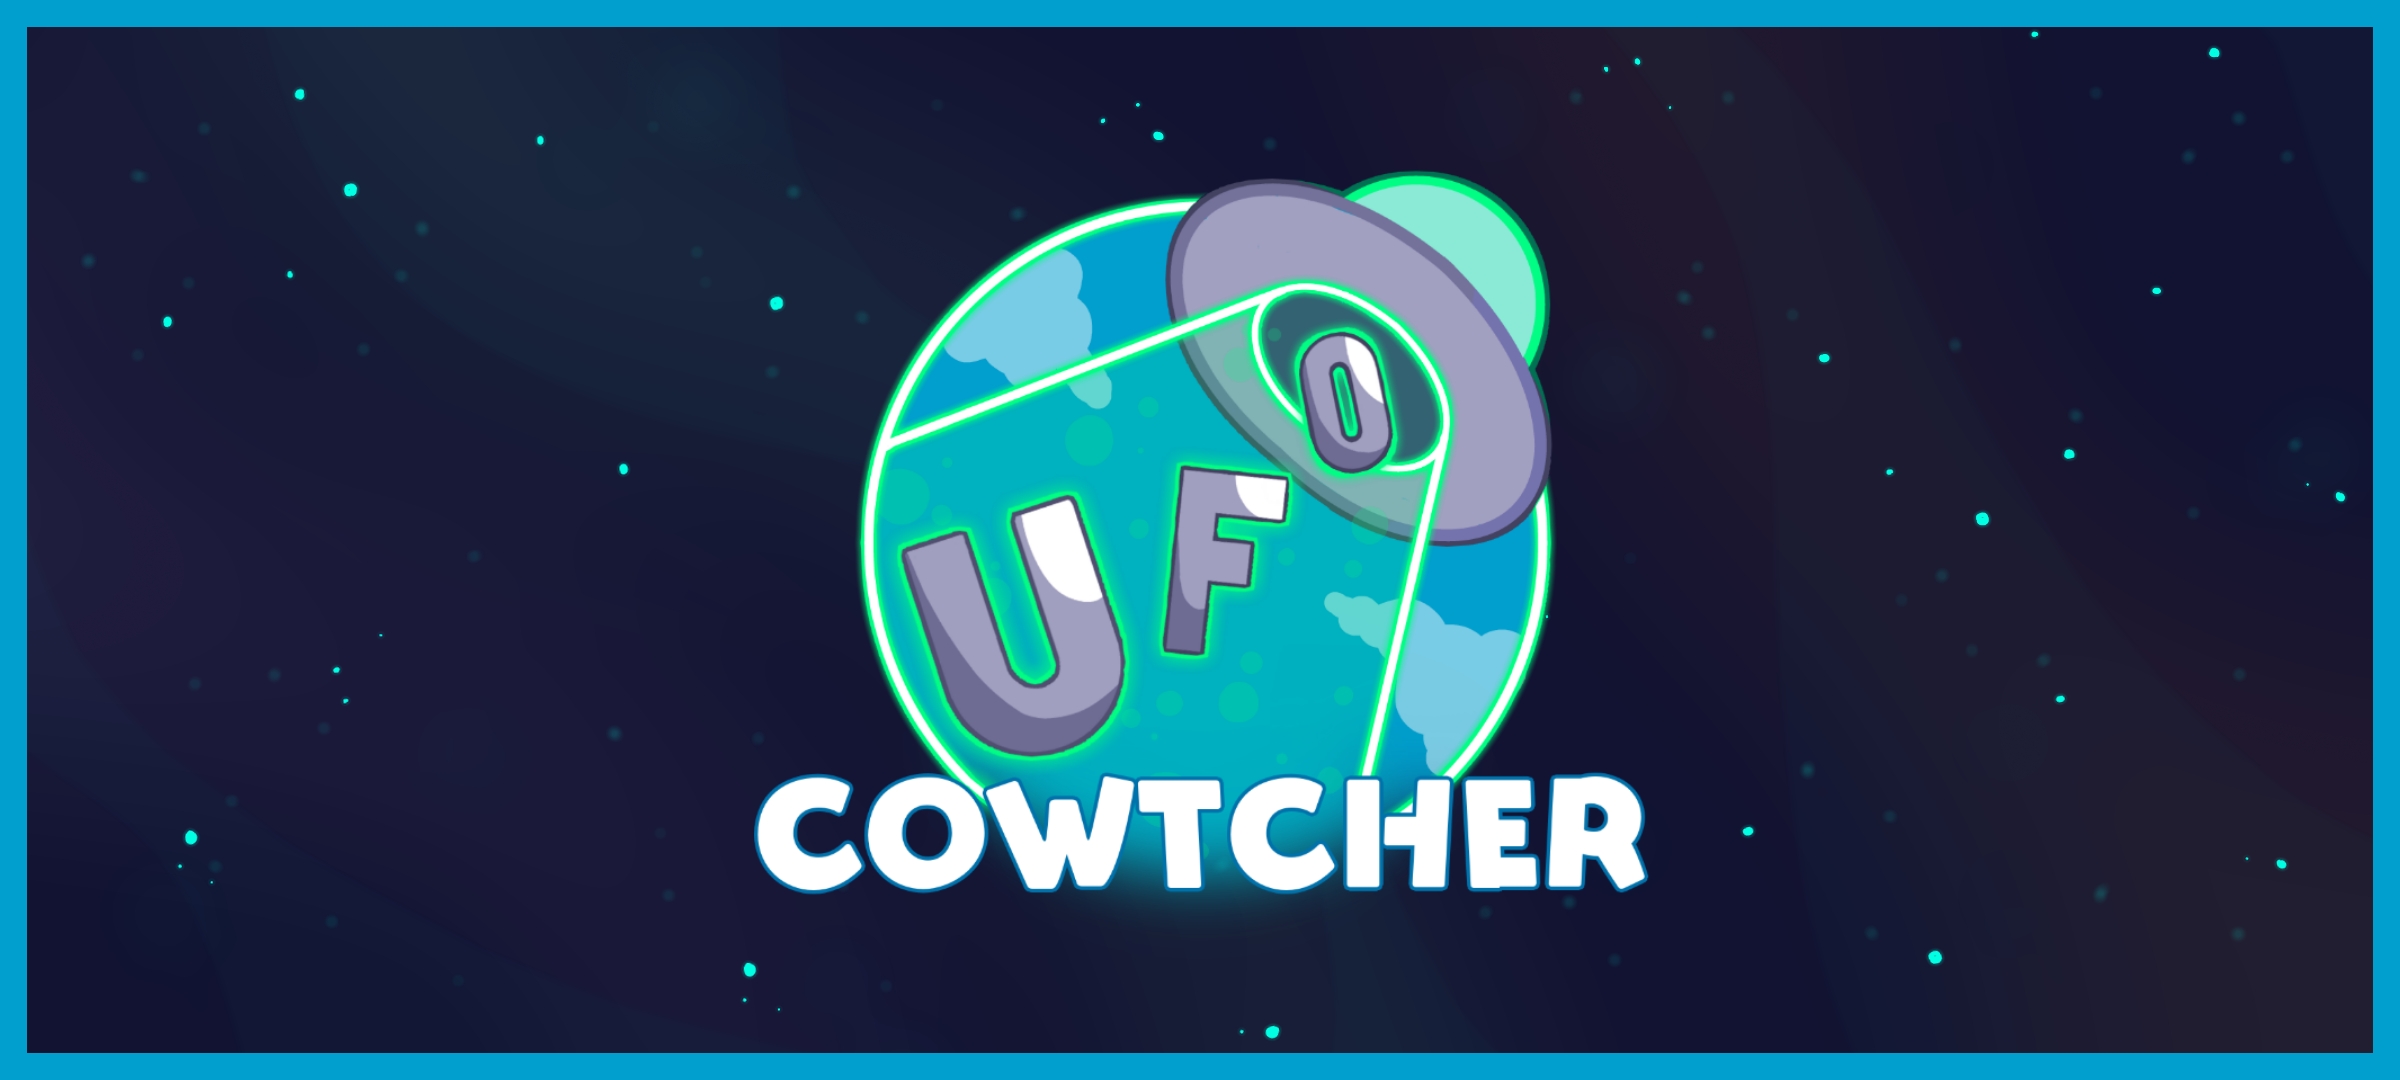 UFO Cowtcher